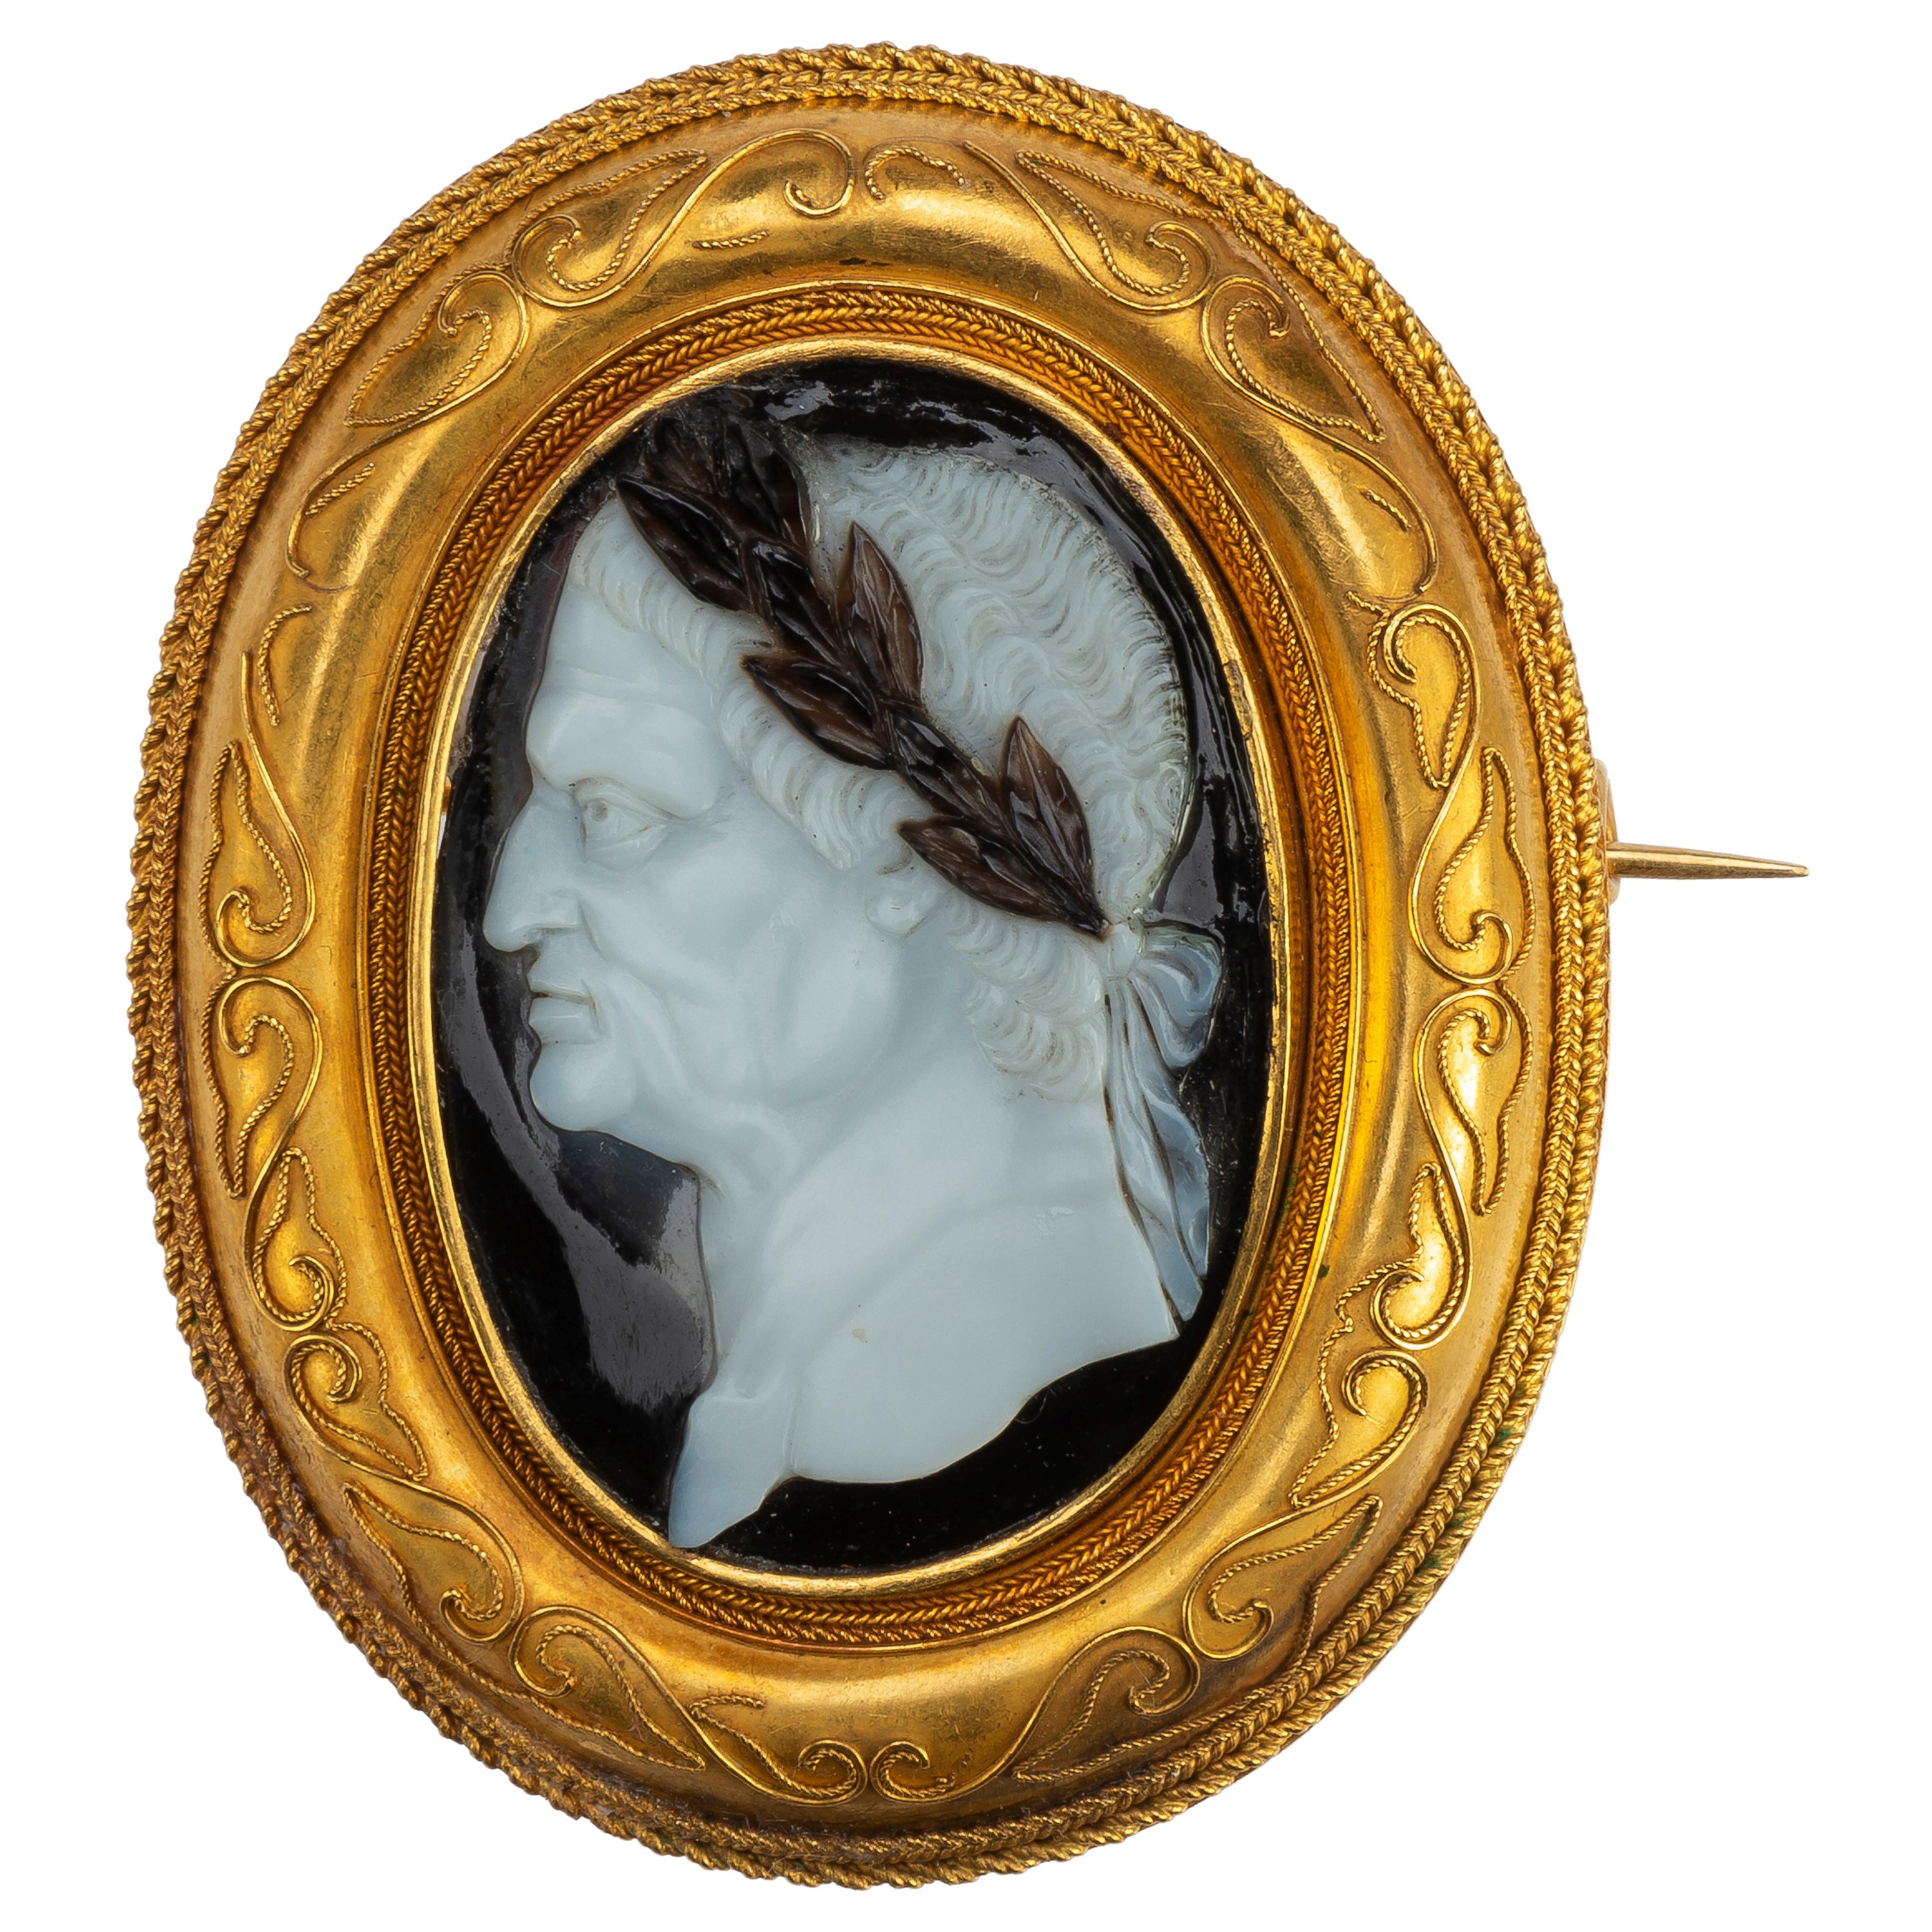 Porträtkamee des Kaisers Vespasian aus der Renaissance in einer Goldbrosche im Angebot